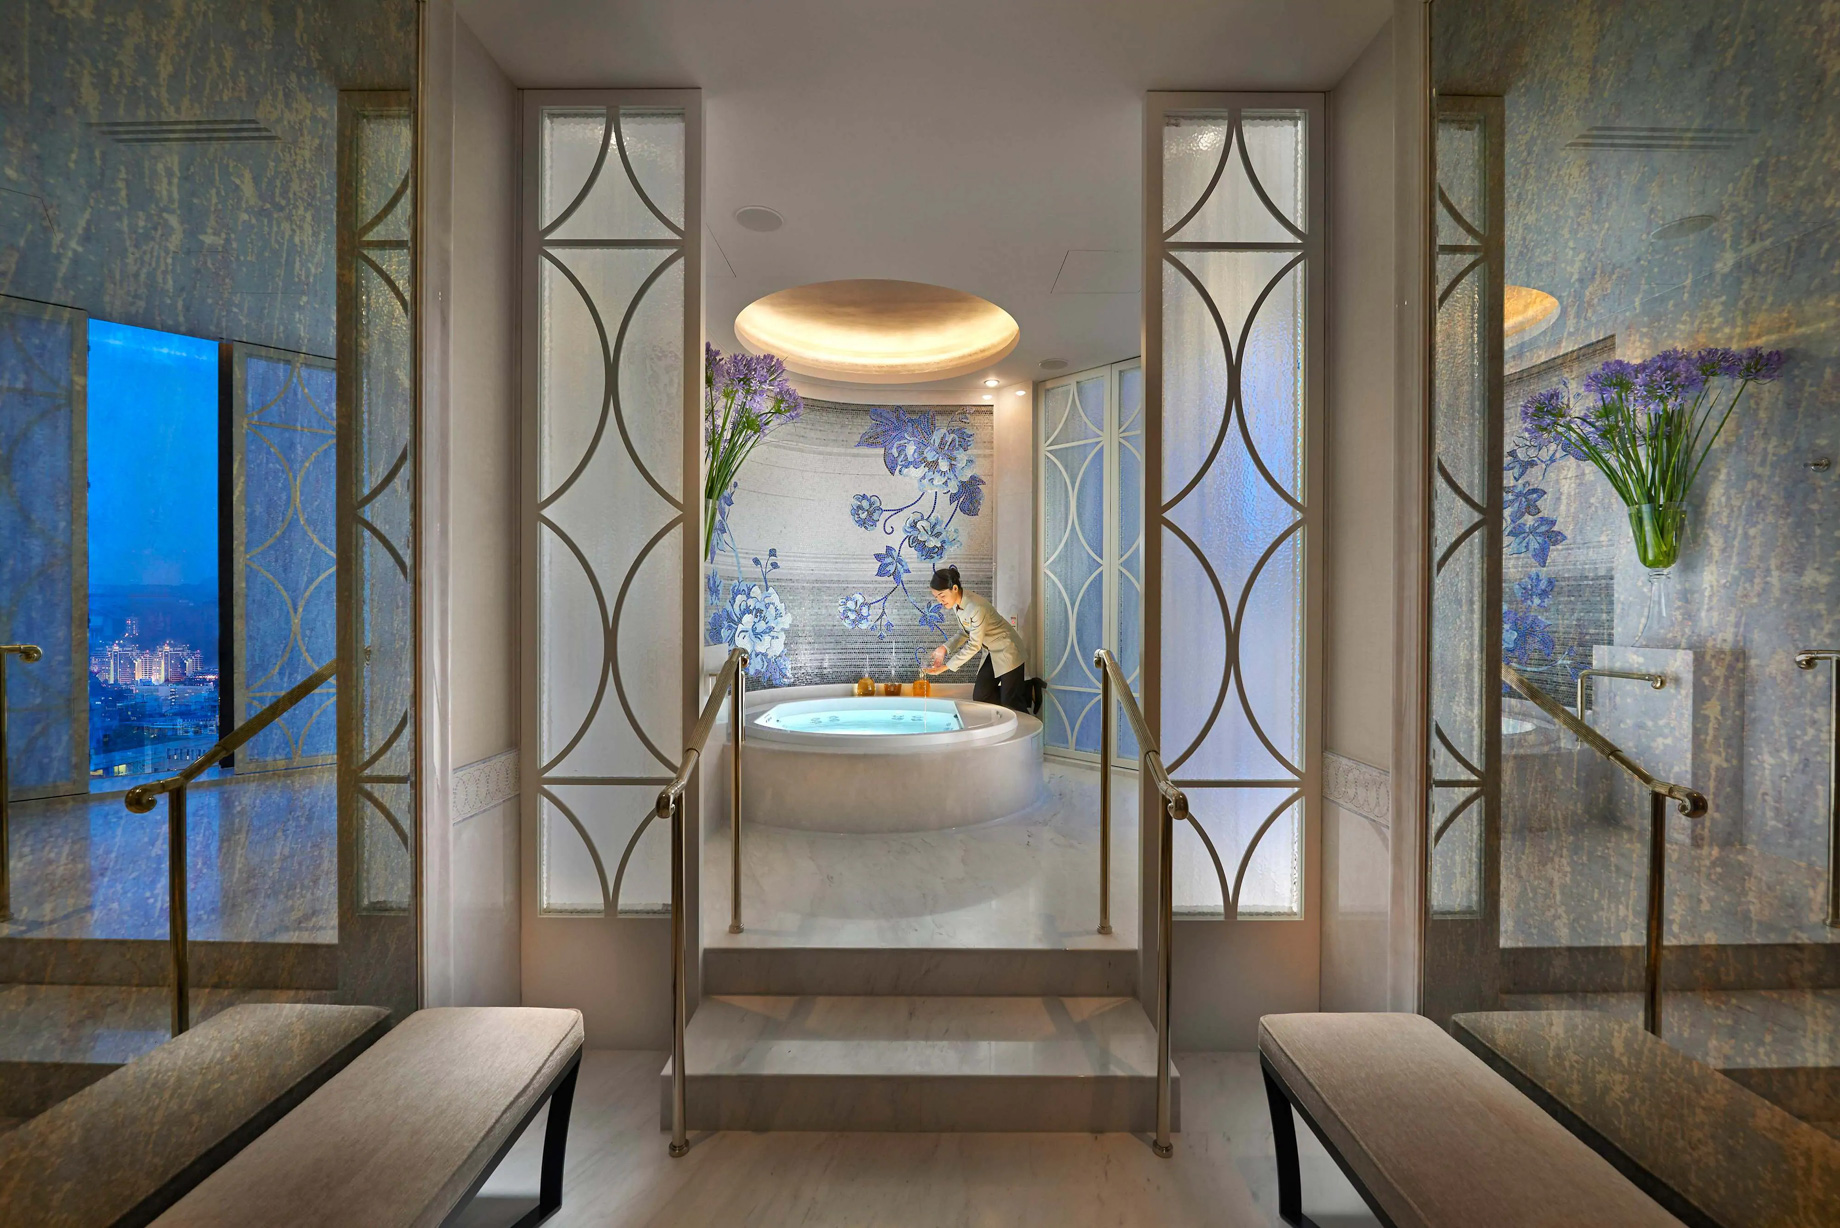 Mandarin Oriental, Taipei, Hotel – Taipei, Taiwan – Presidential Suite Bathroom